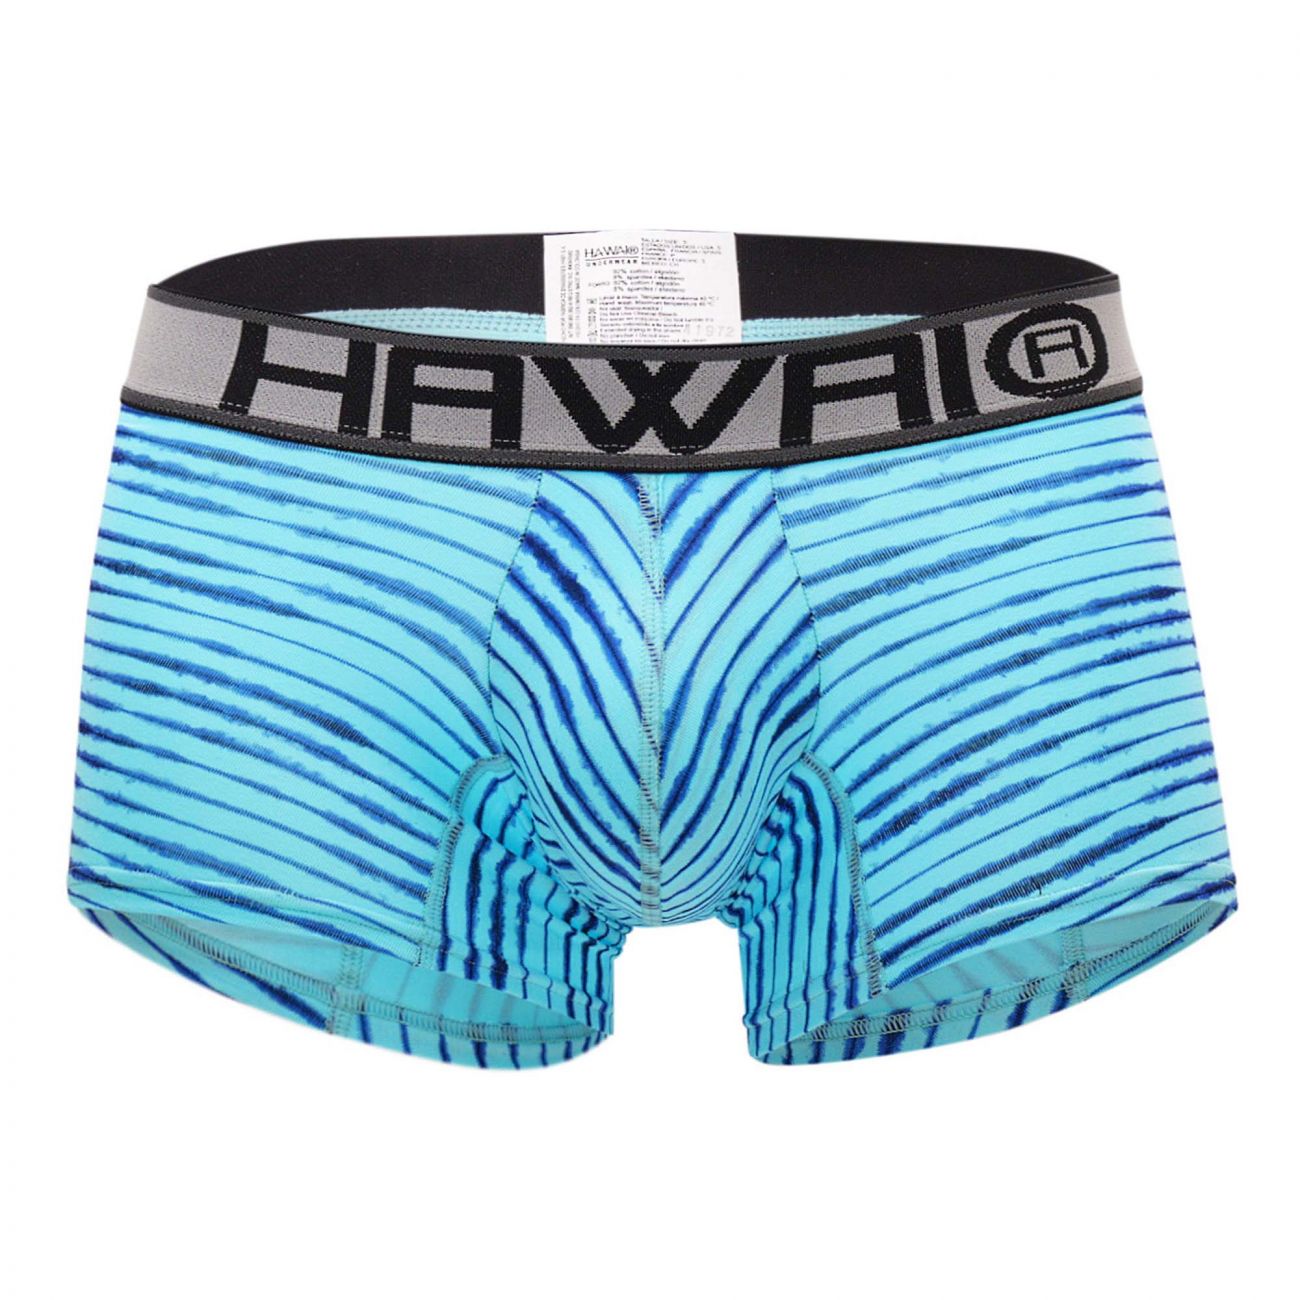 HAWAI 41972 Boxer Briefs Blue